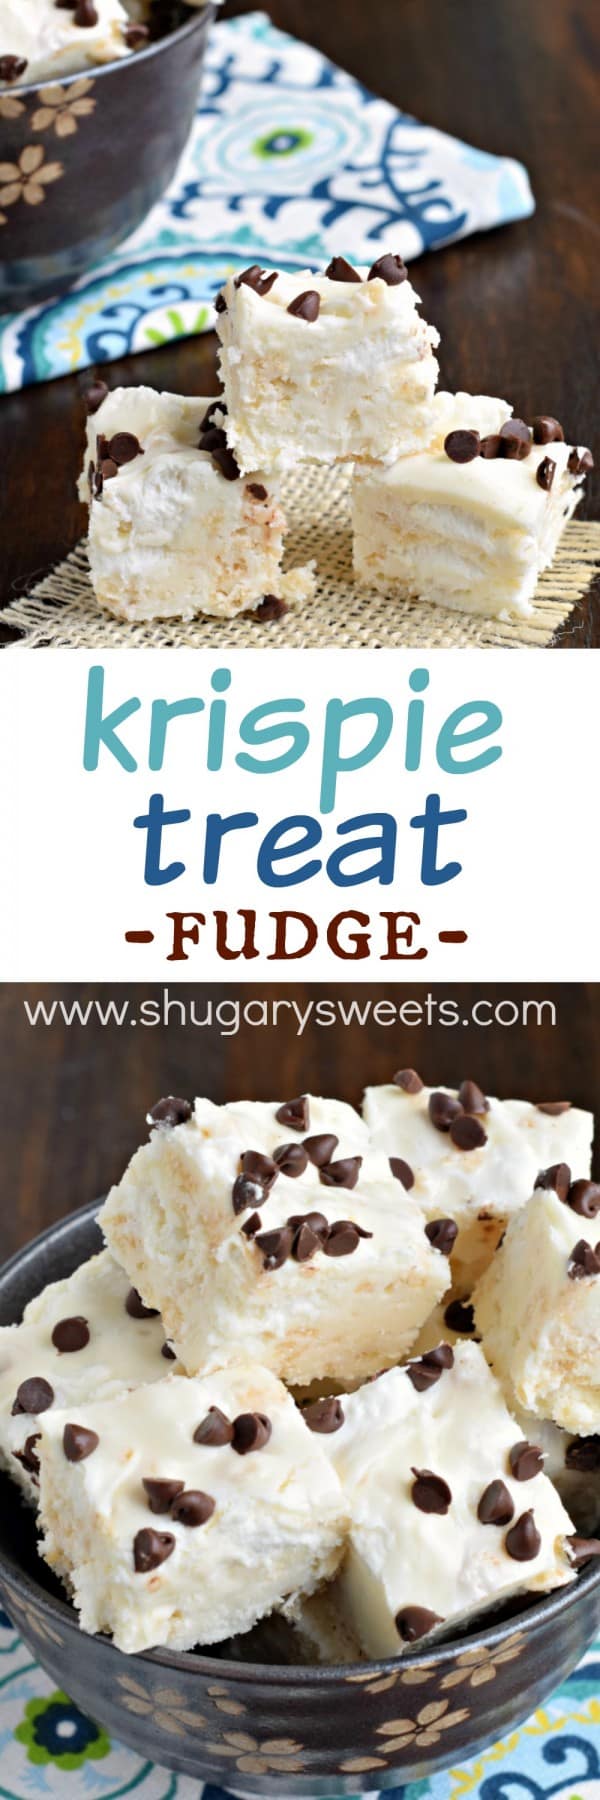 Krispie Treat Fudge recipe: gooey krispie treat flavor with a decadent fudge texture. A must make!